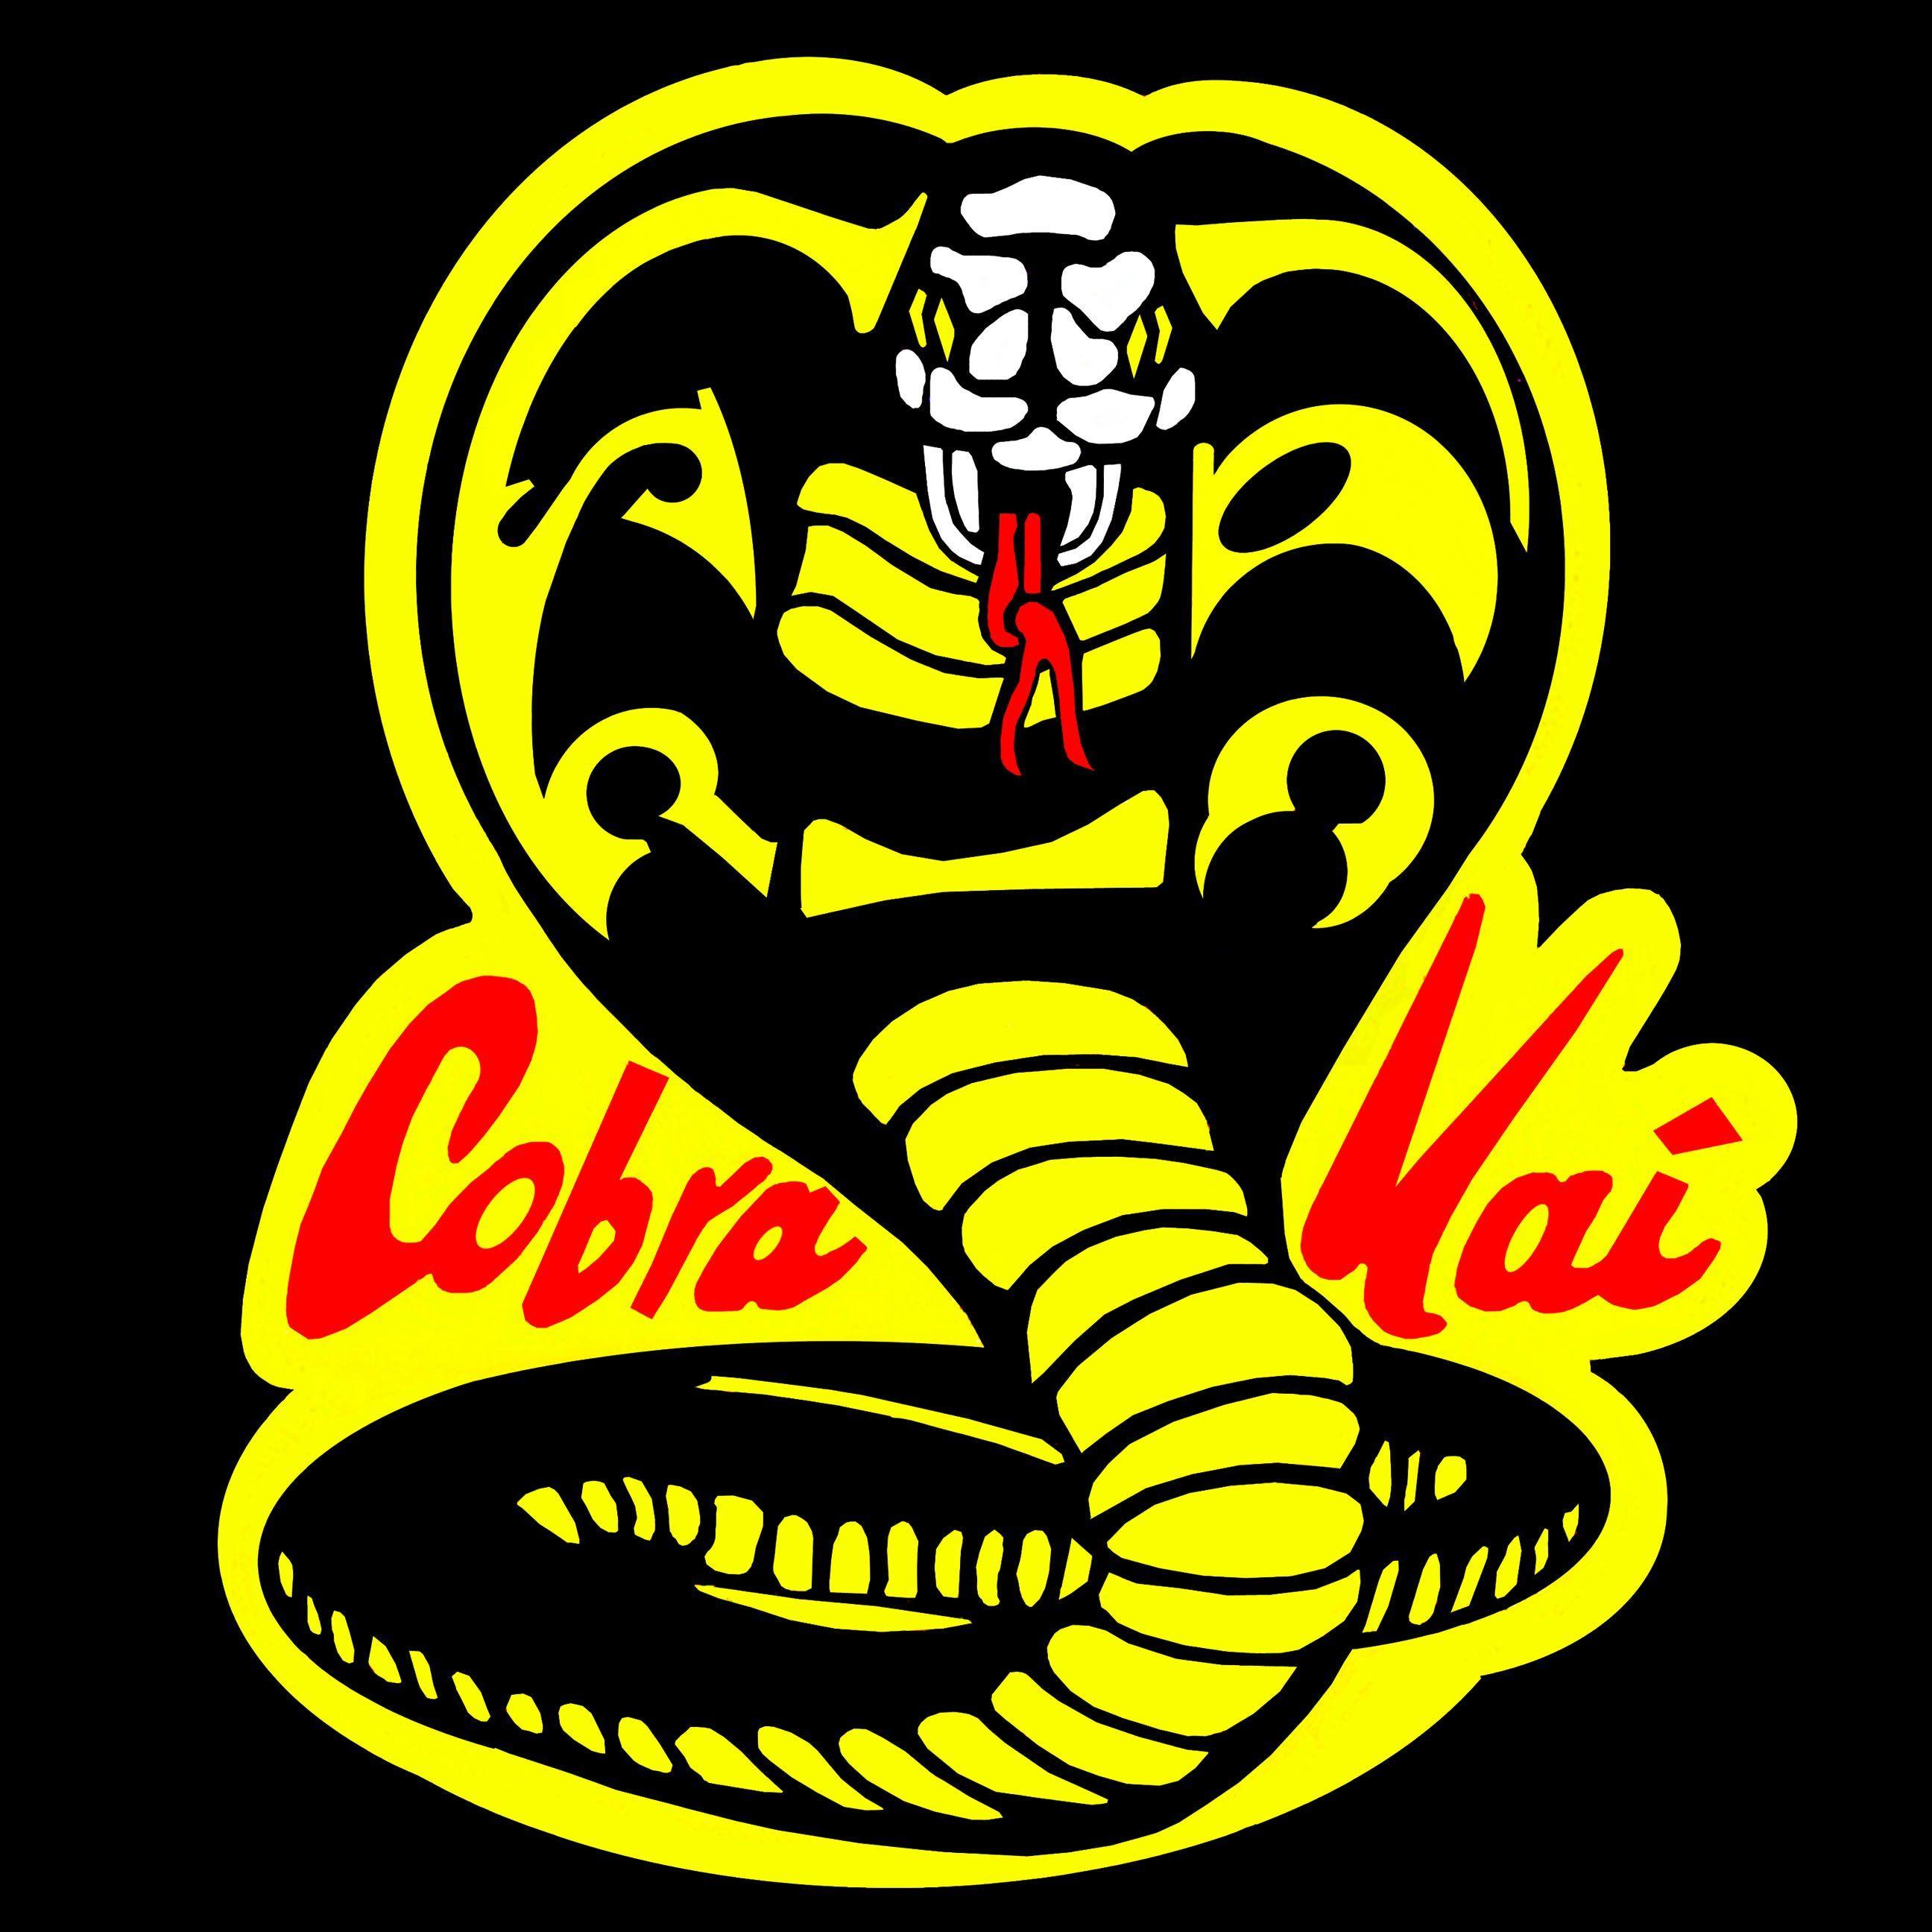 Kai Logo - Cobra Kai Logo